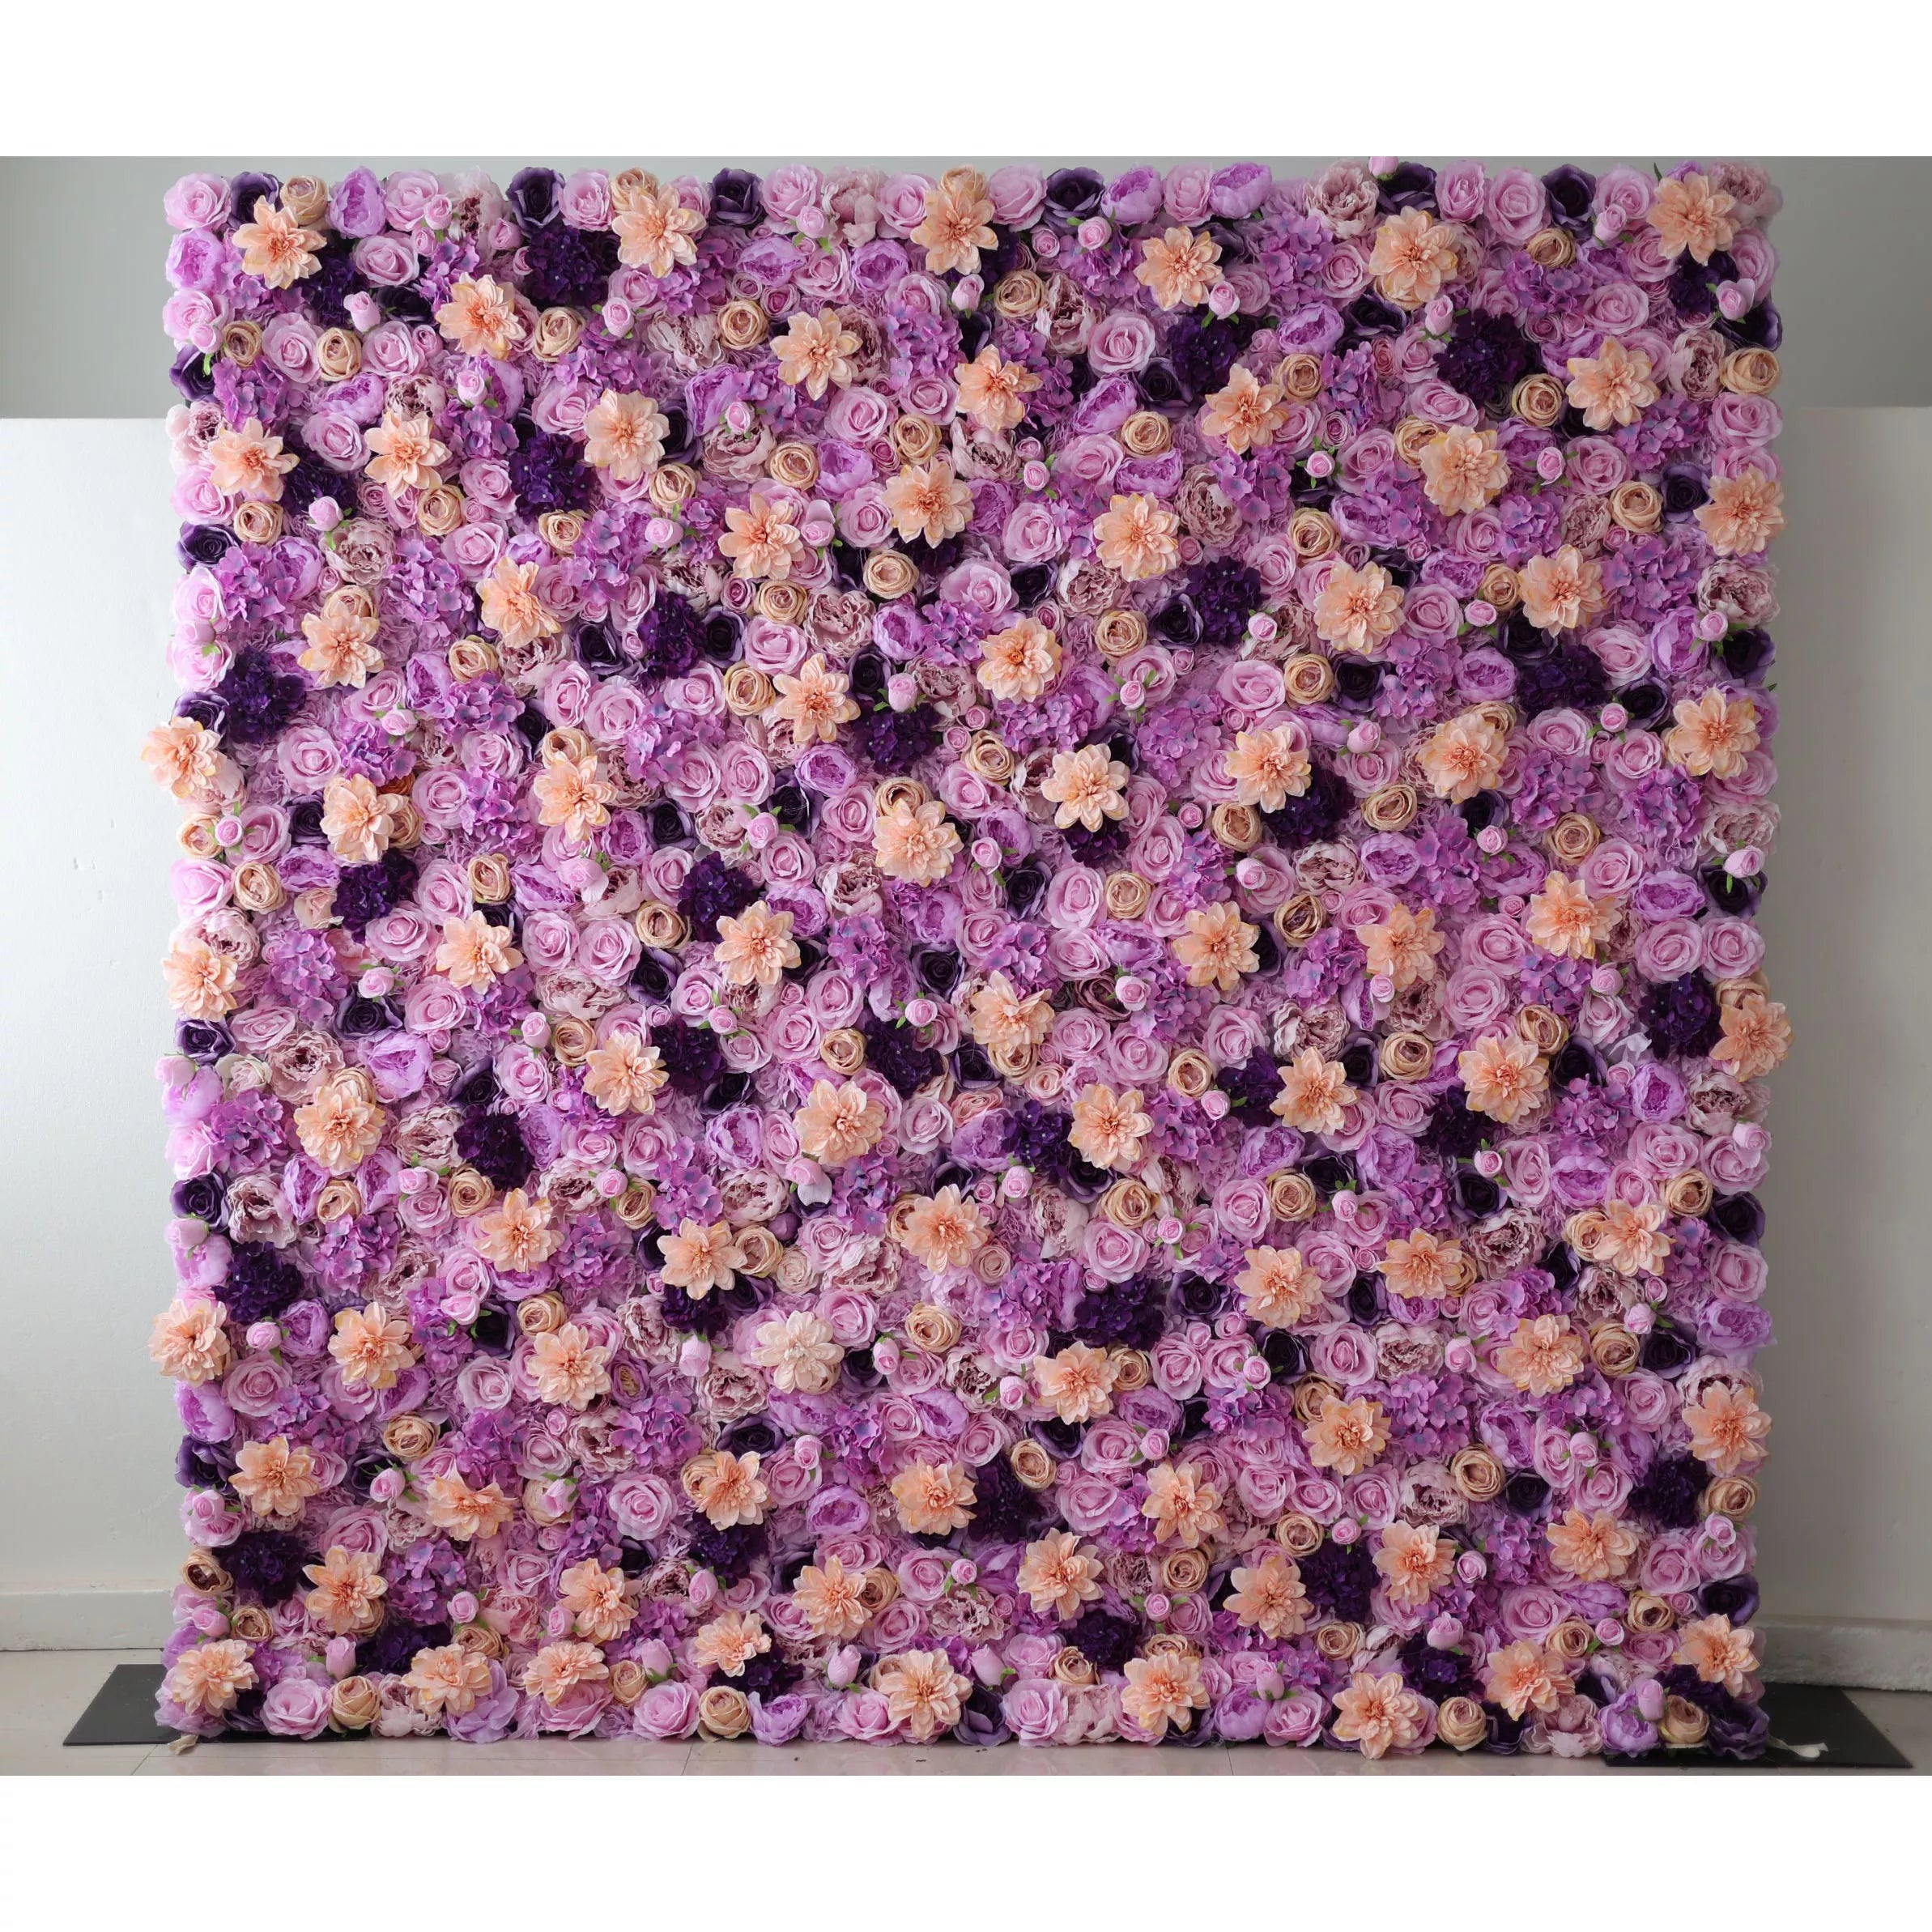 Valar Flowers Lavender Dreamscape : Une symphonie luxuriante de fleurs violettes et pêche – Élégance ultime dans l’art floral-VF-206